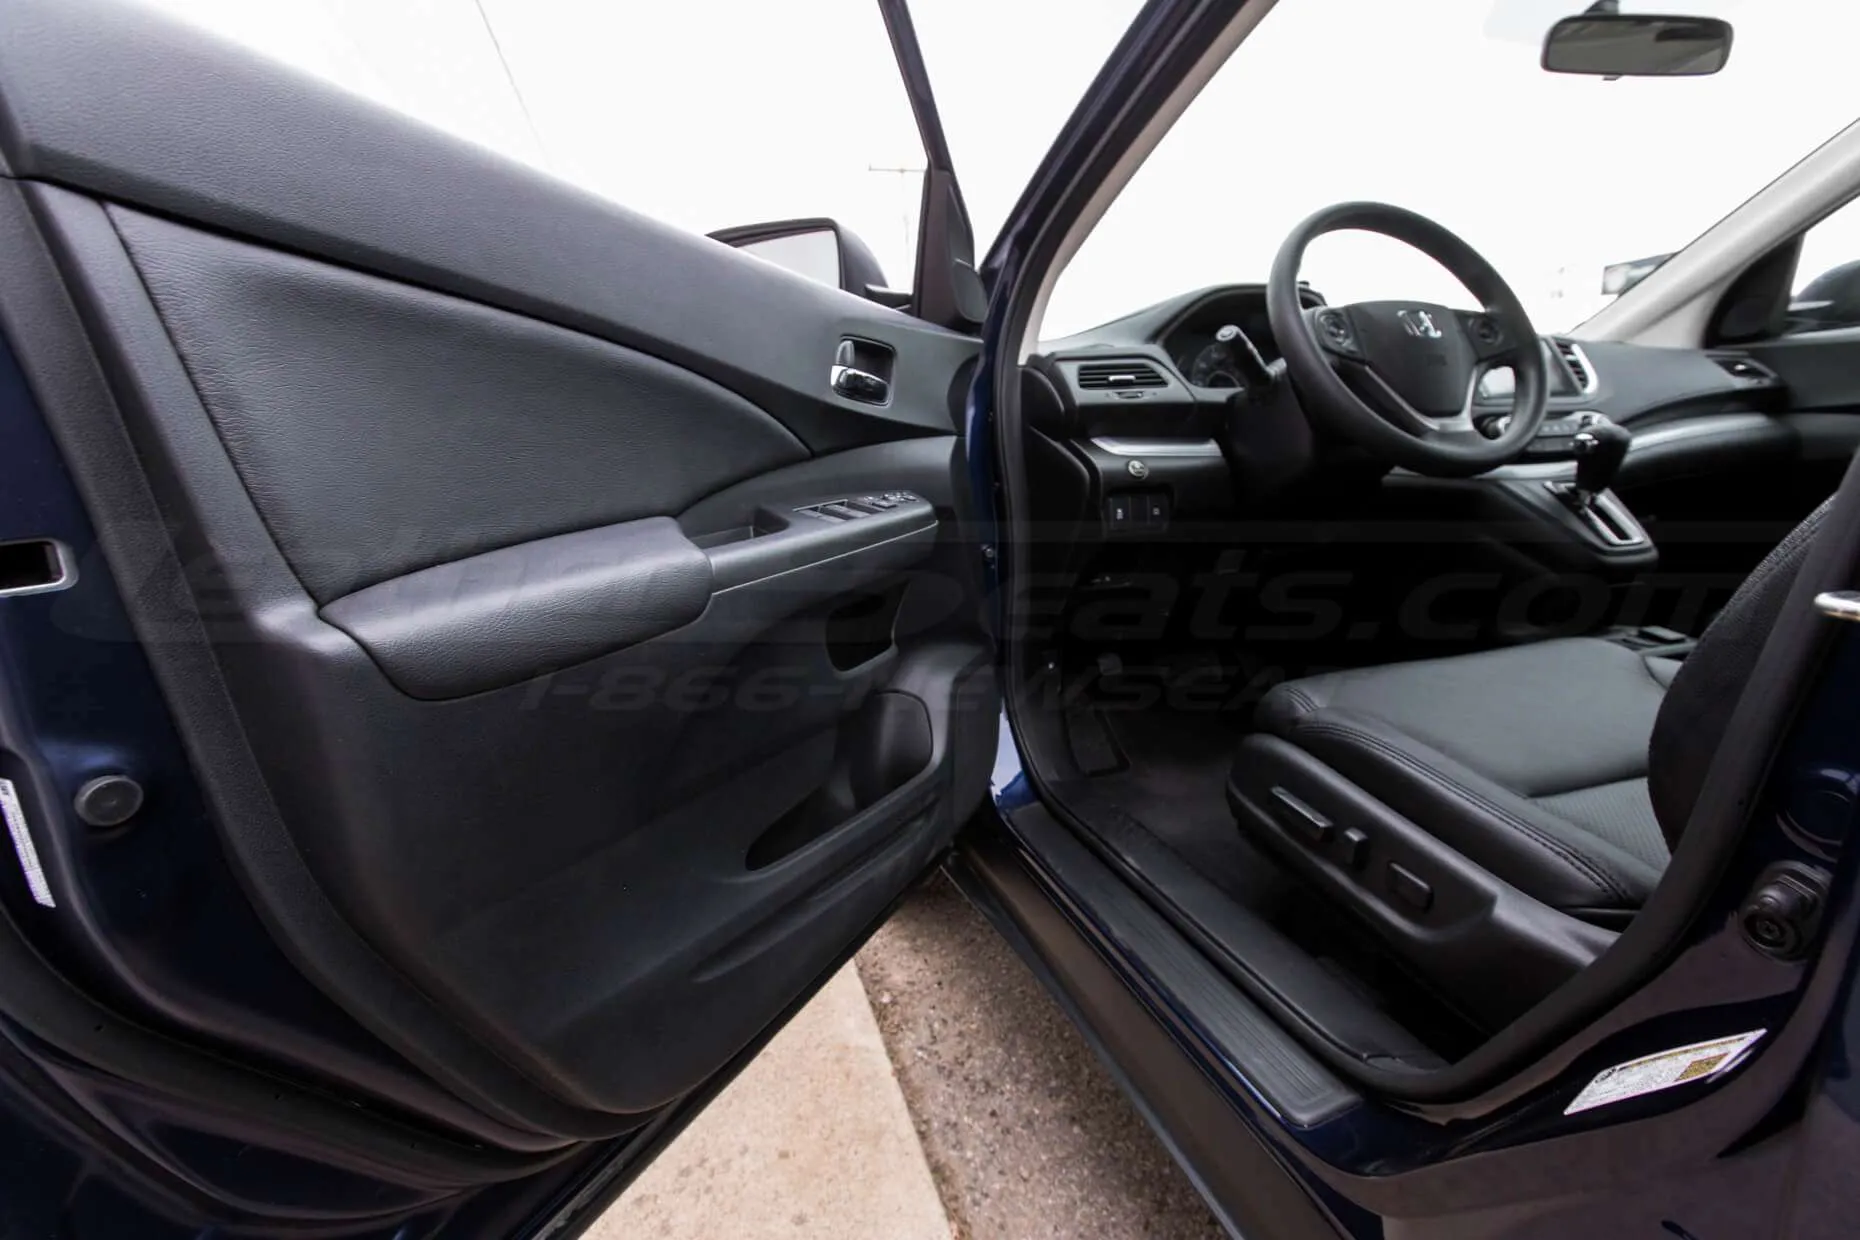 Honda CRV Leather Kit  Black  LeatherSeatscom